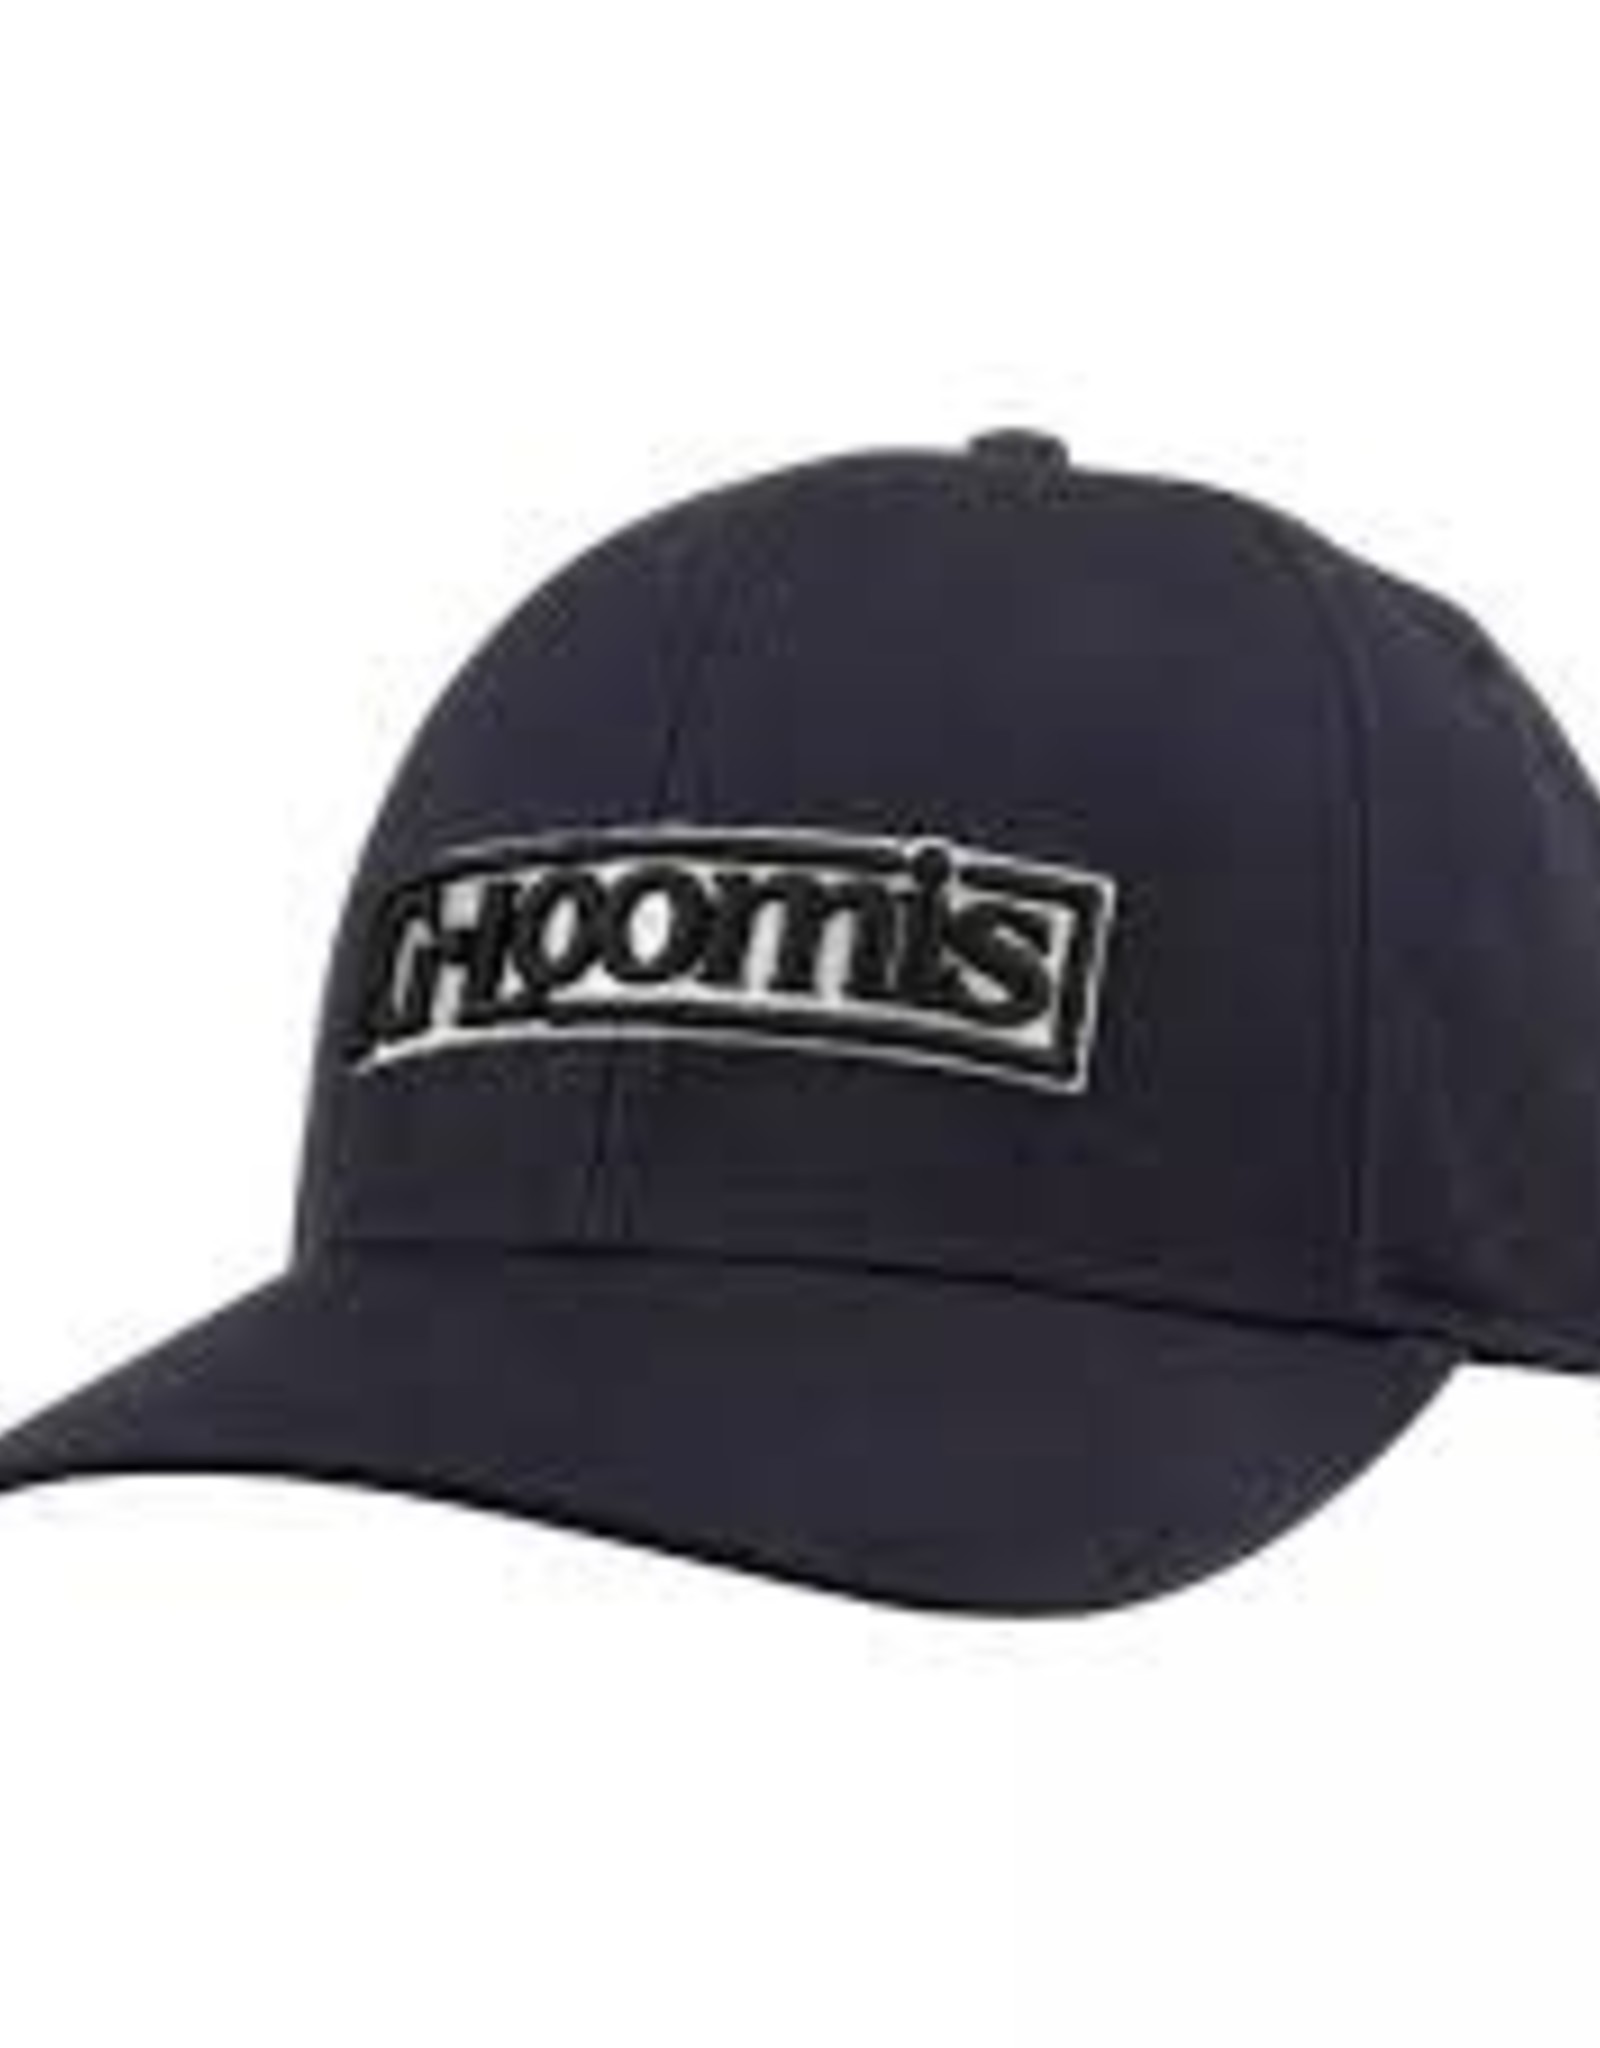 G. Loomis G.Loomis Logo Hat